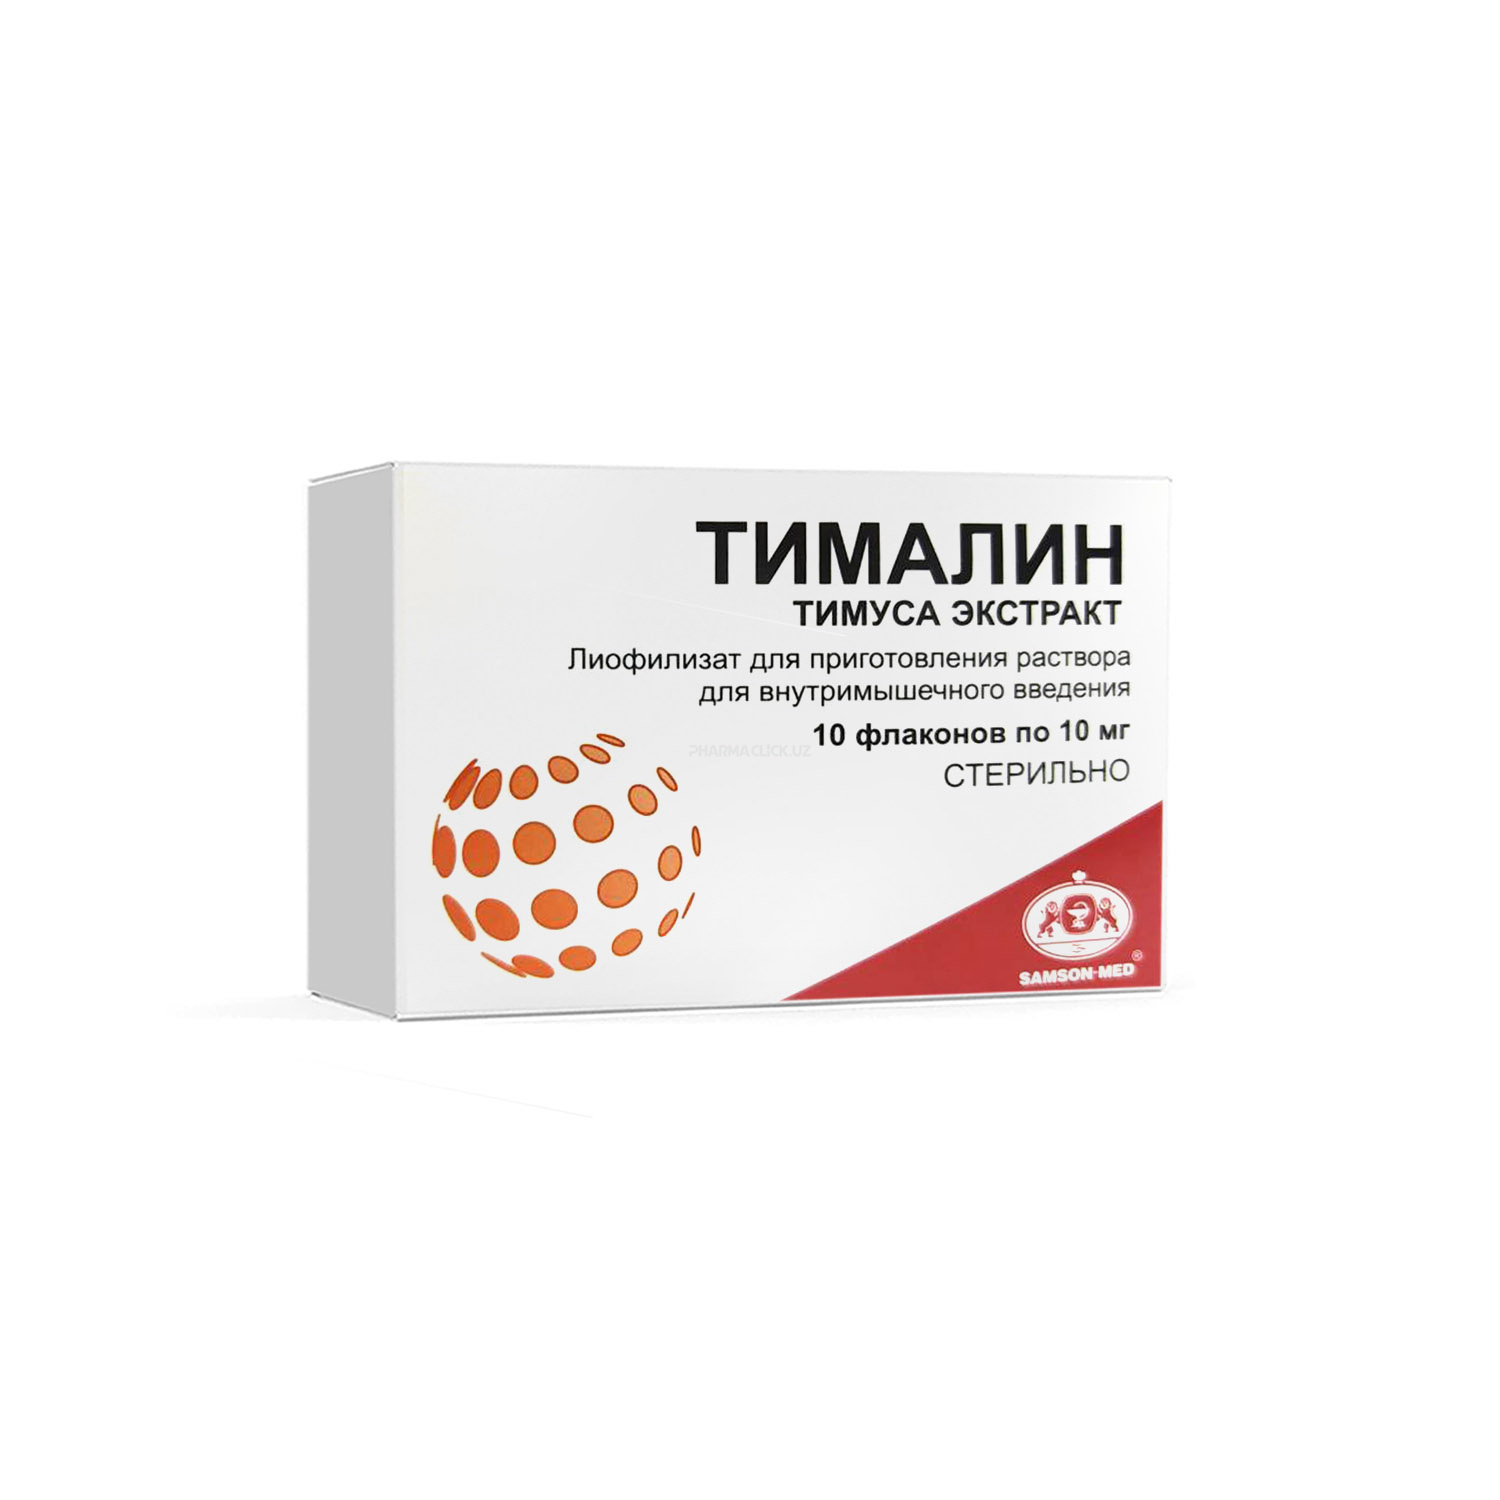 Тималин 10 мг №10 (Самсон Мед)